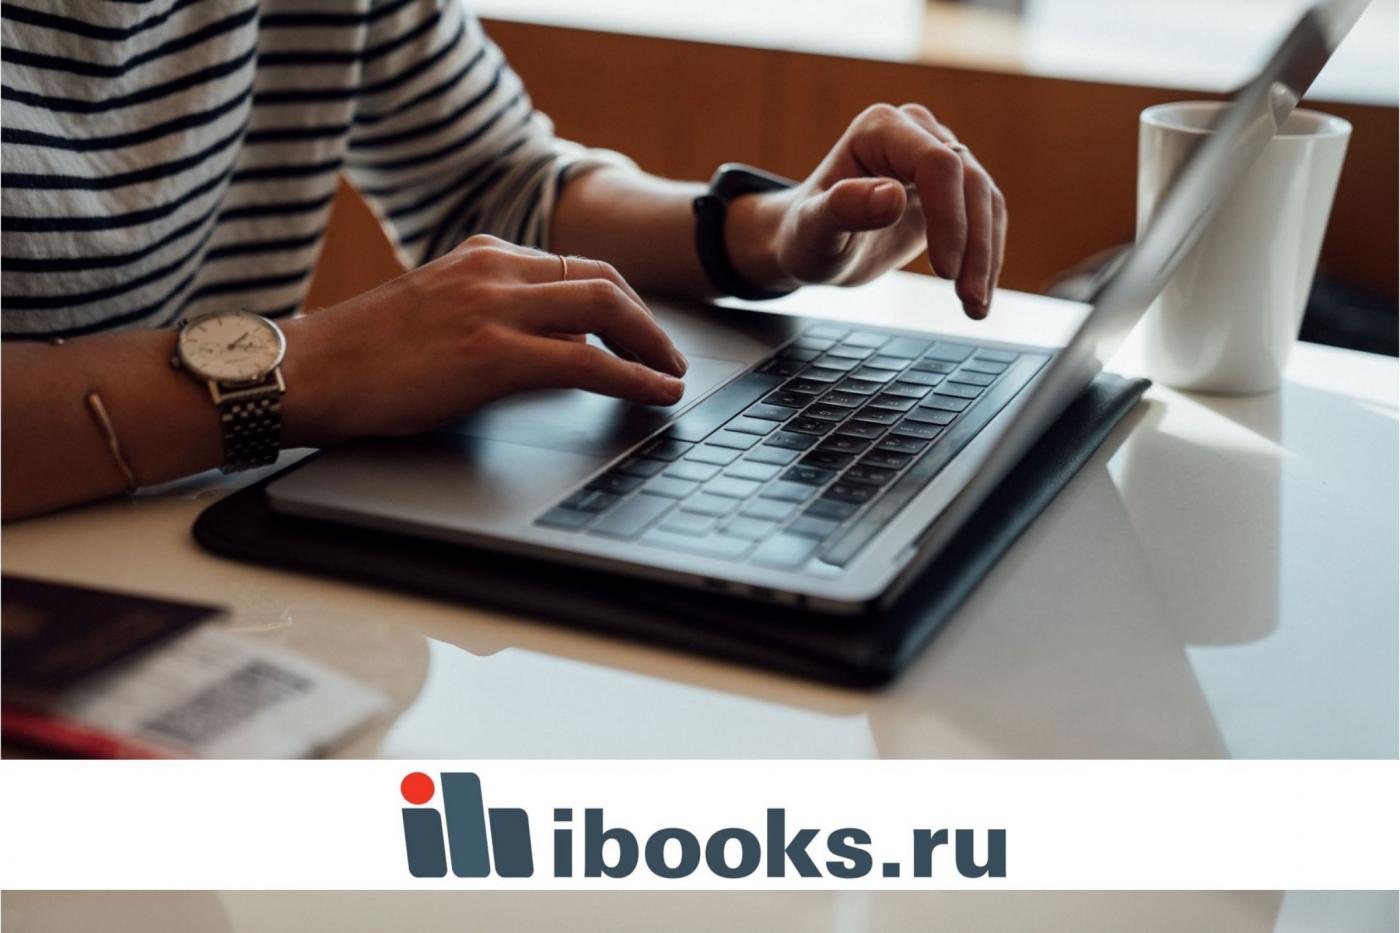 Открыт тестовый доступ к электронно-библиотечной системе ibooks.ru